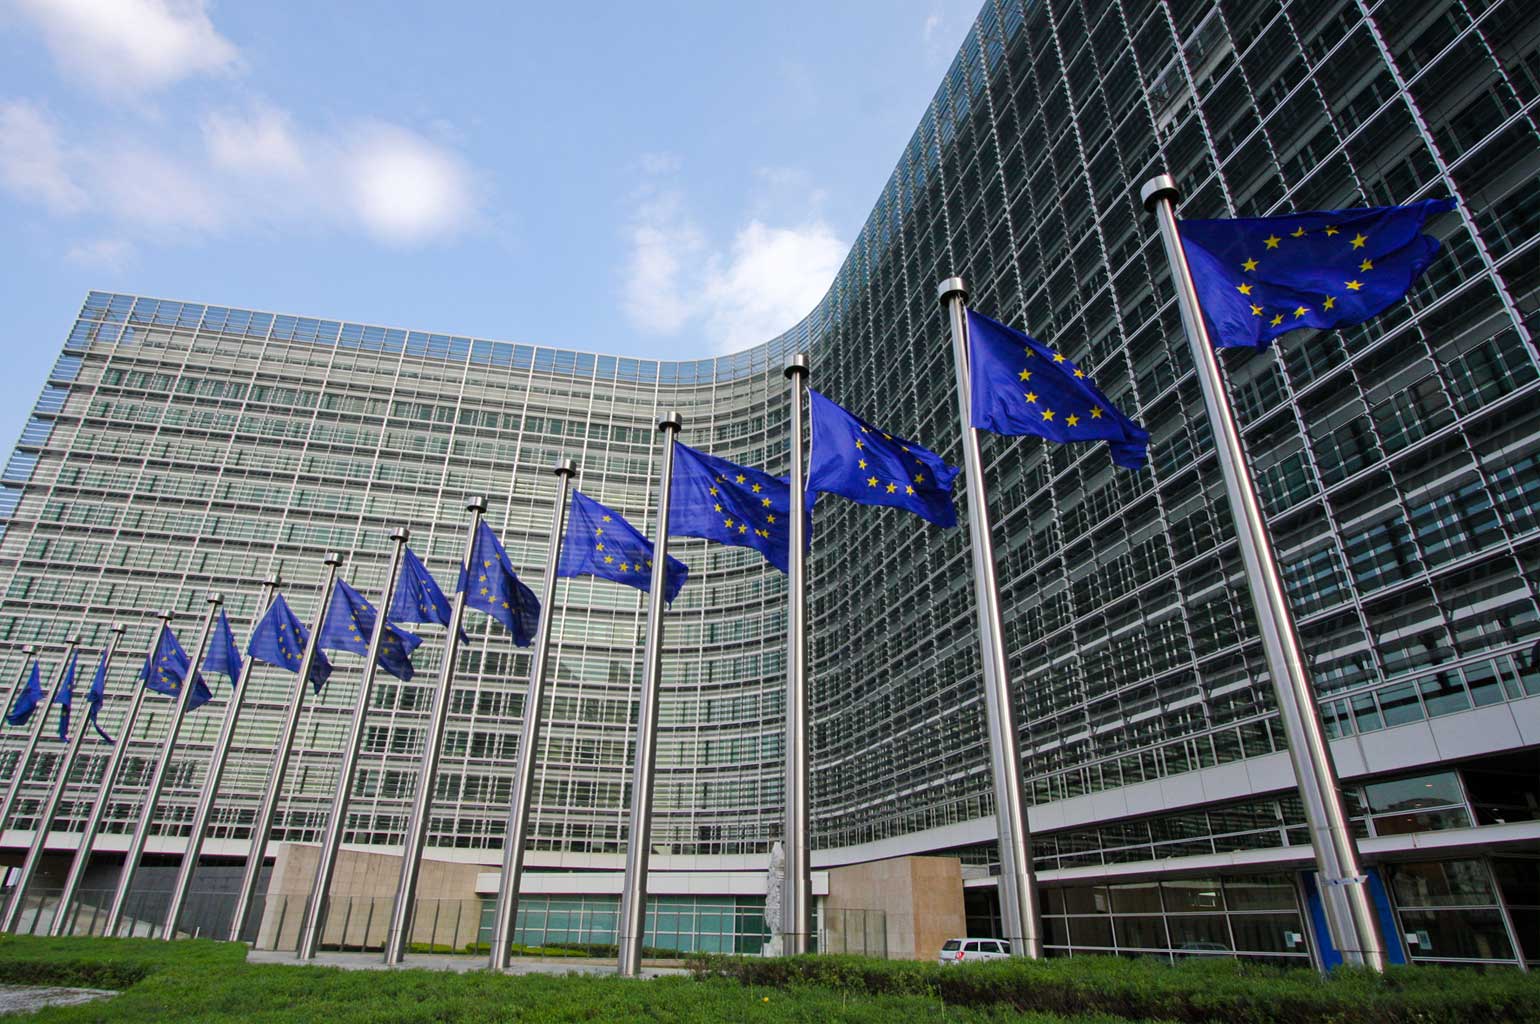 نظر سنجی: حمایت از اتحادیه اروپا افزایش یافته است